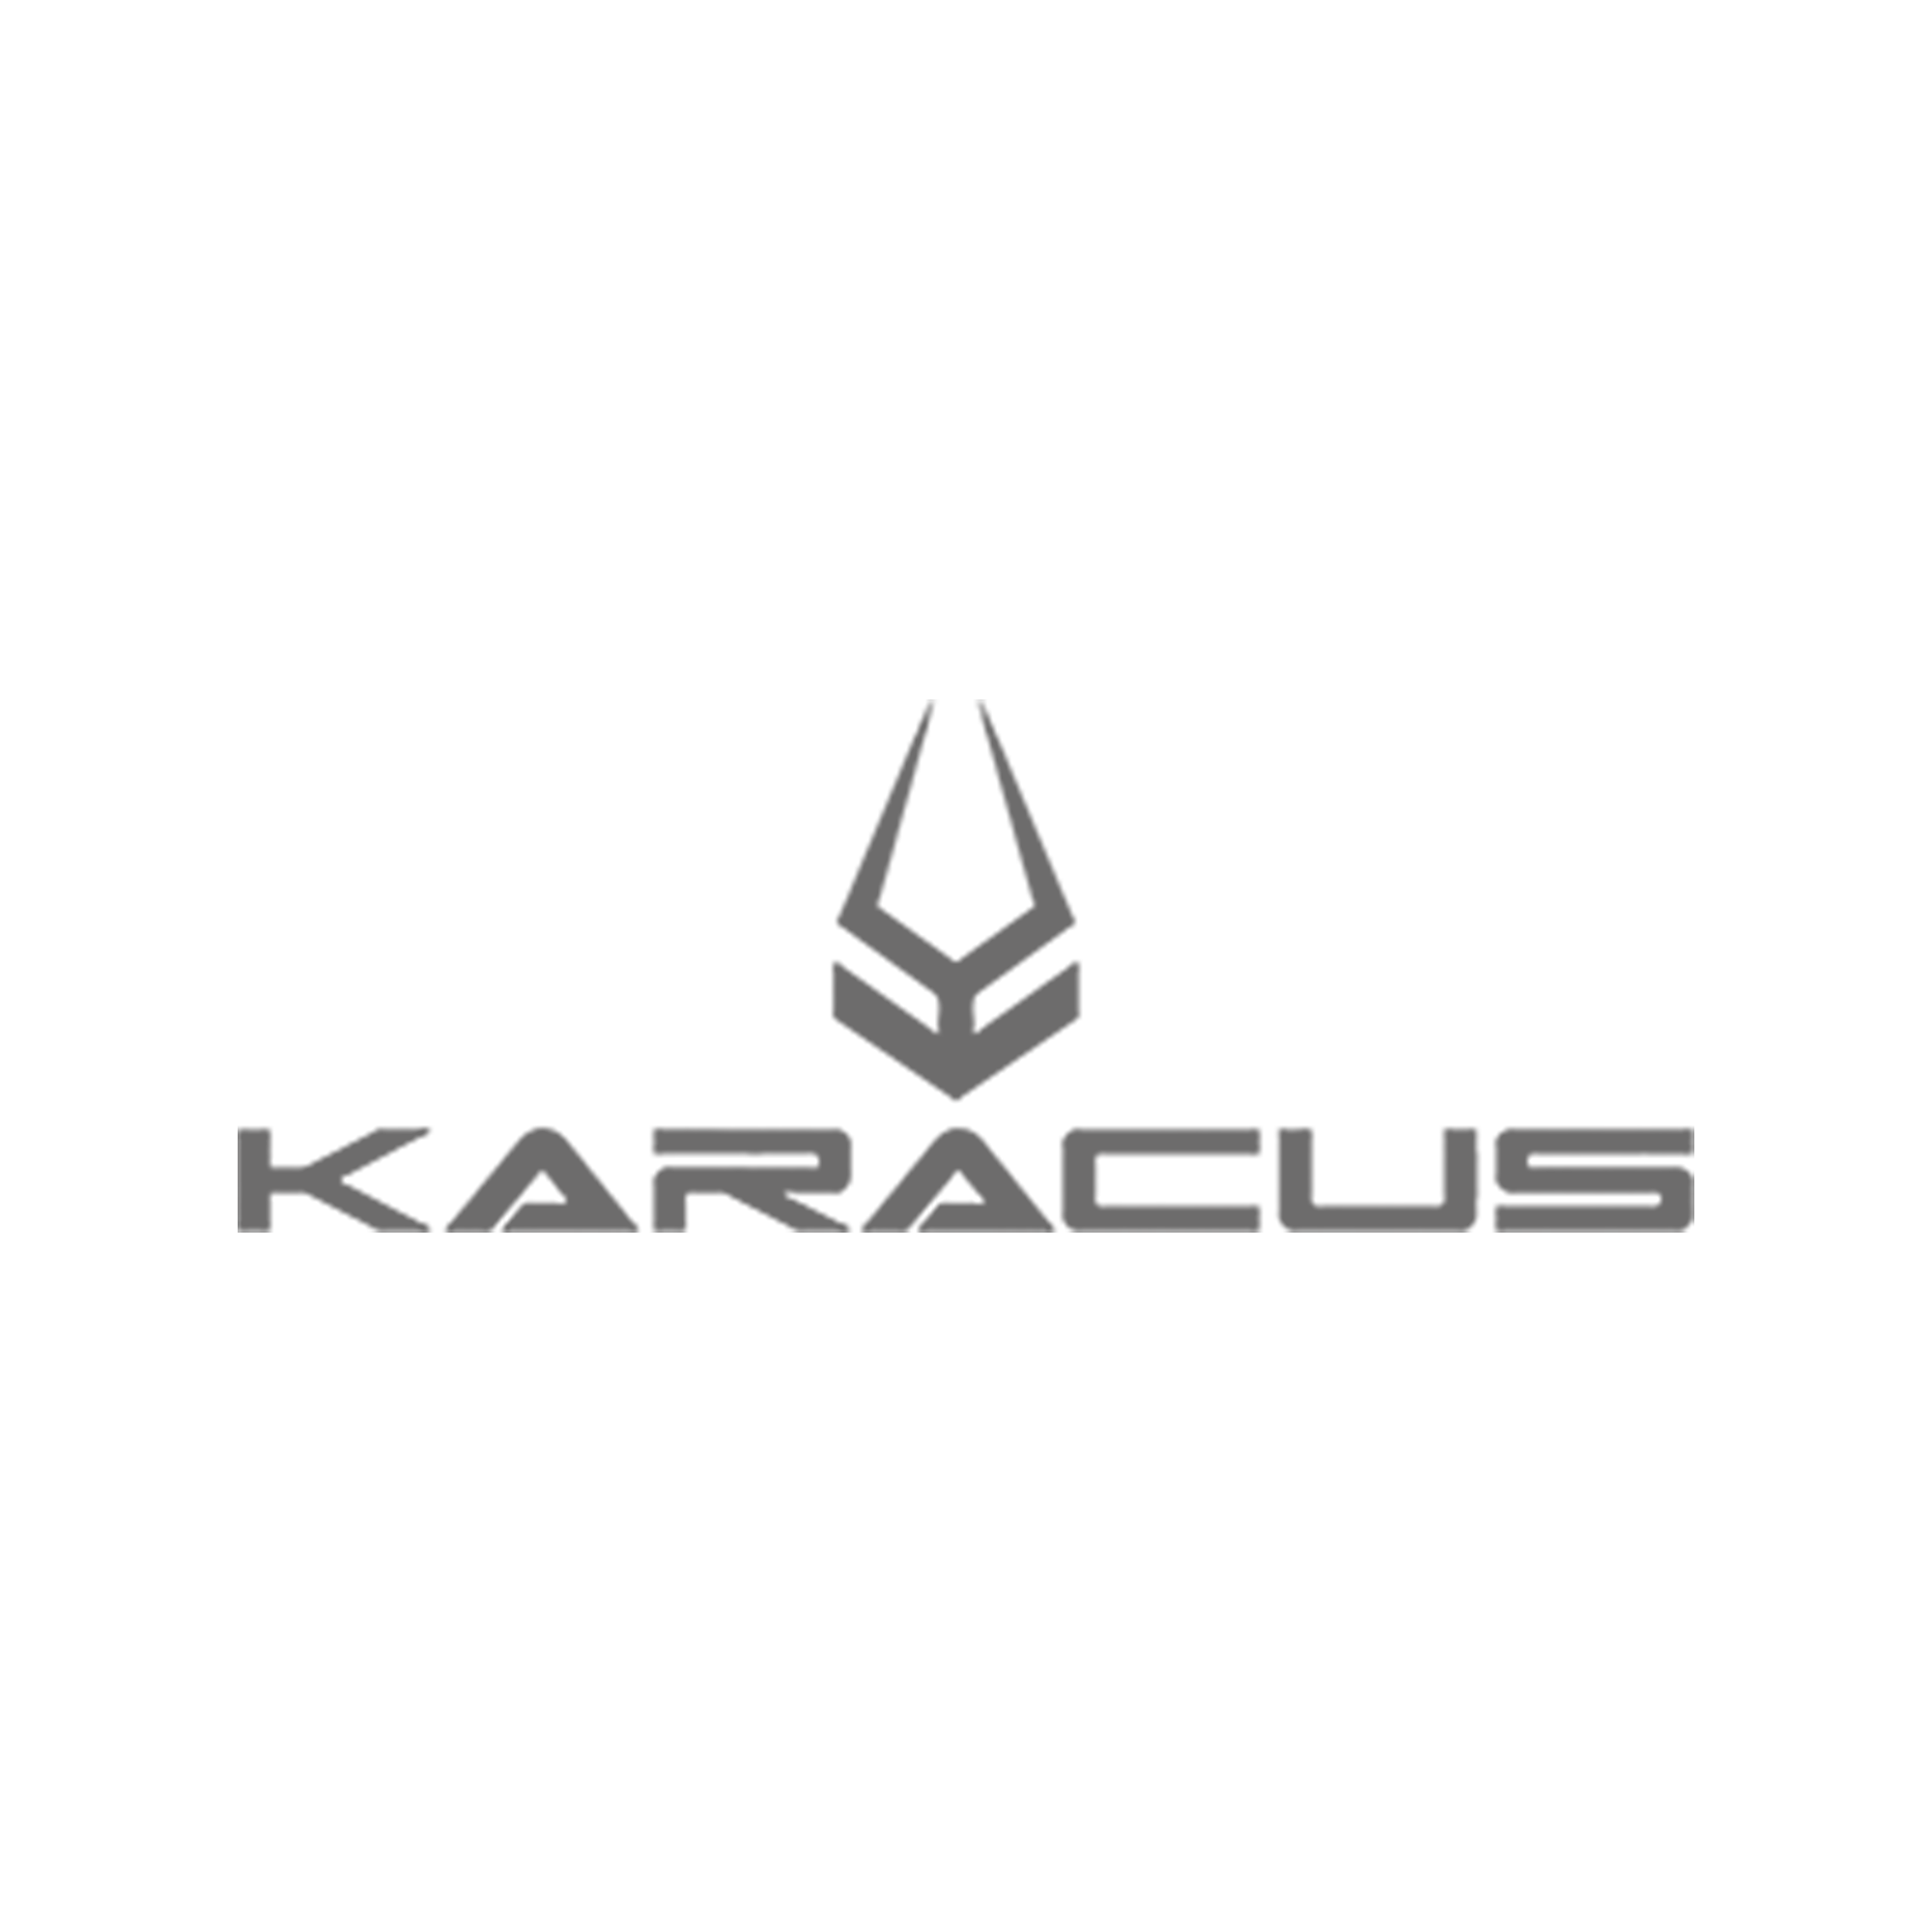 Karacus